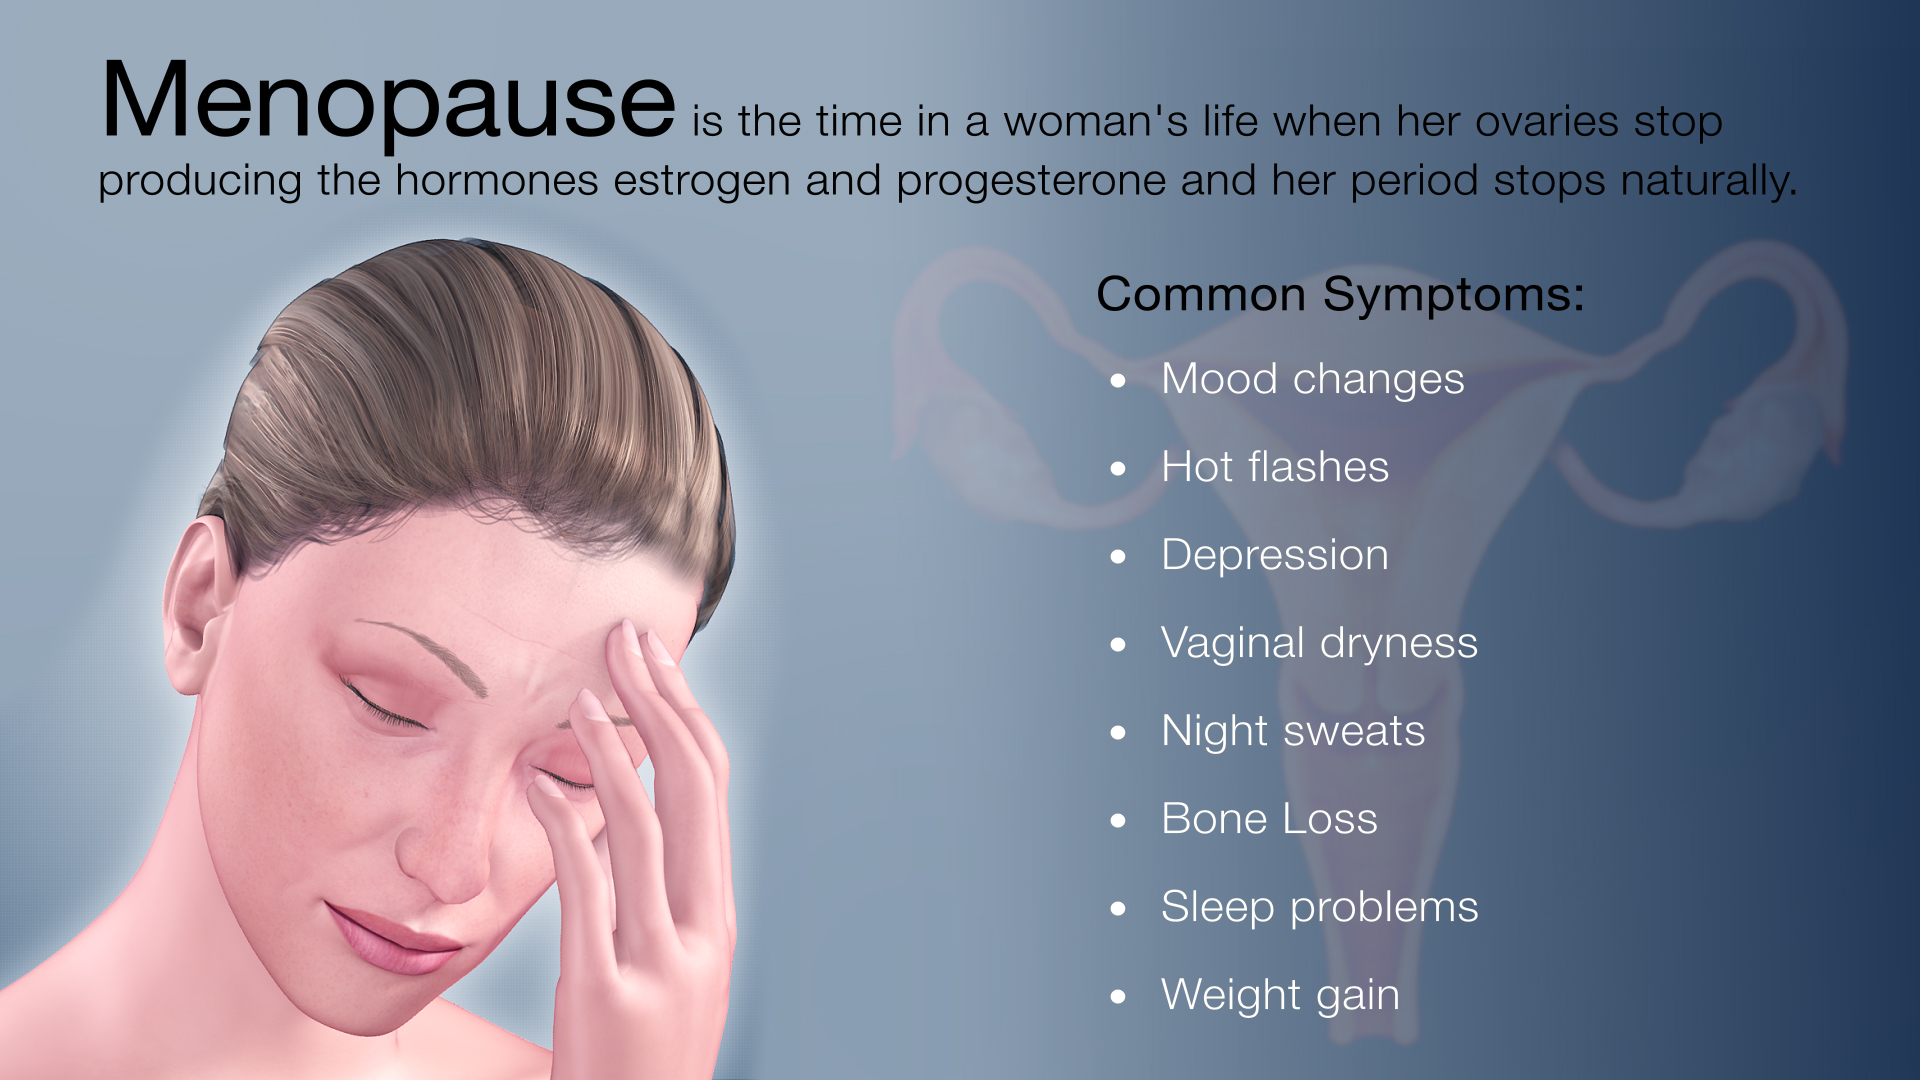 Medical Animation Still Shot Showing Menopause Symptoms